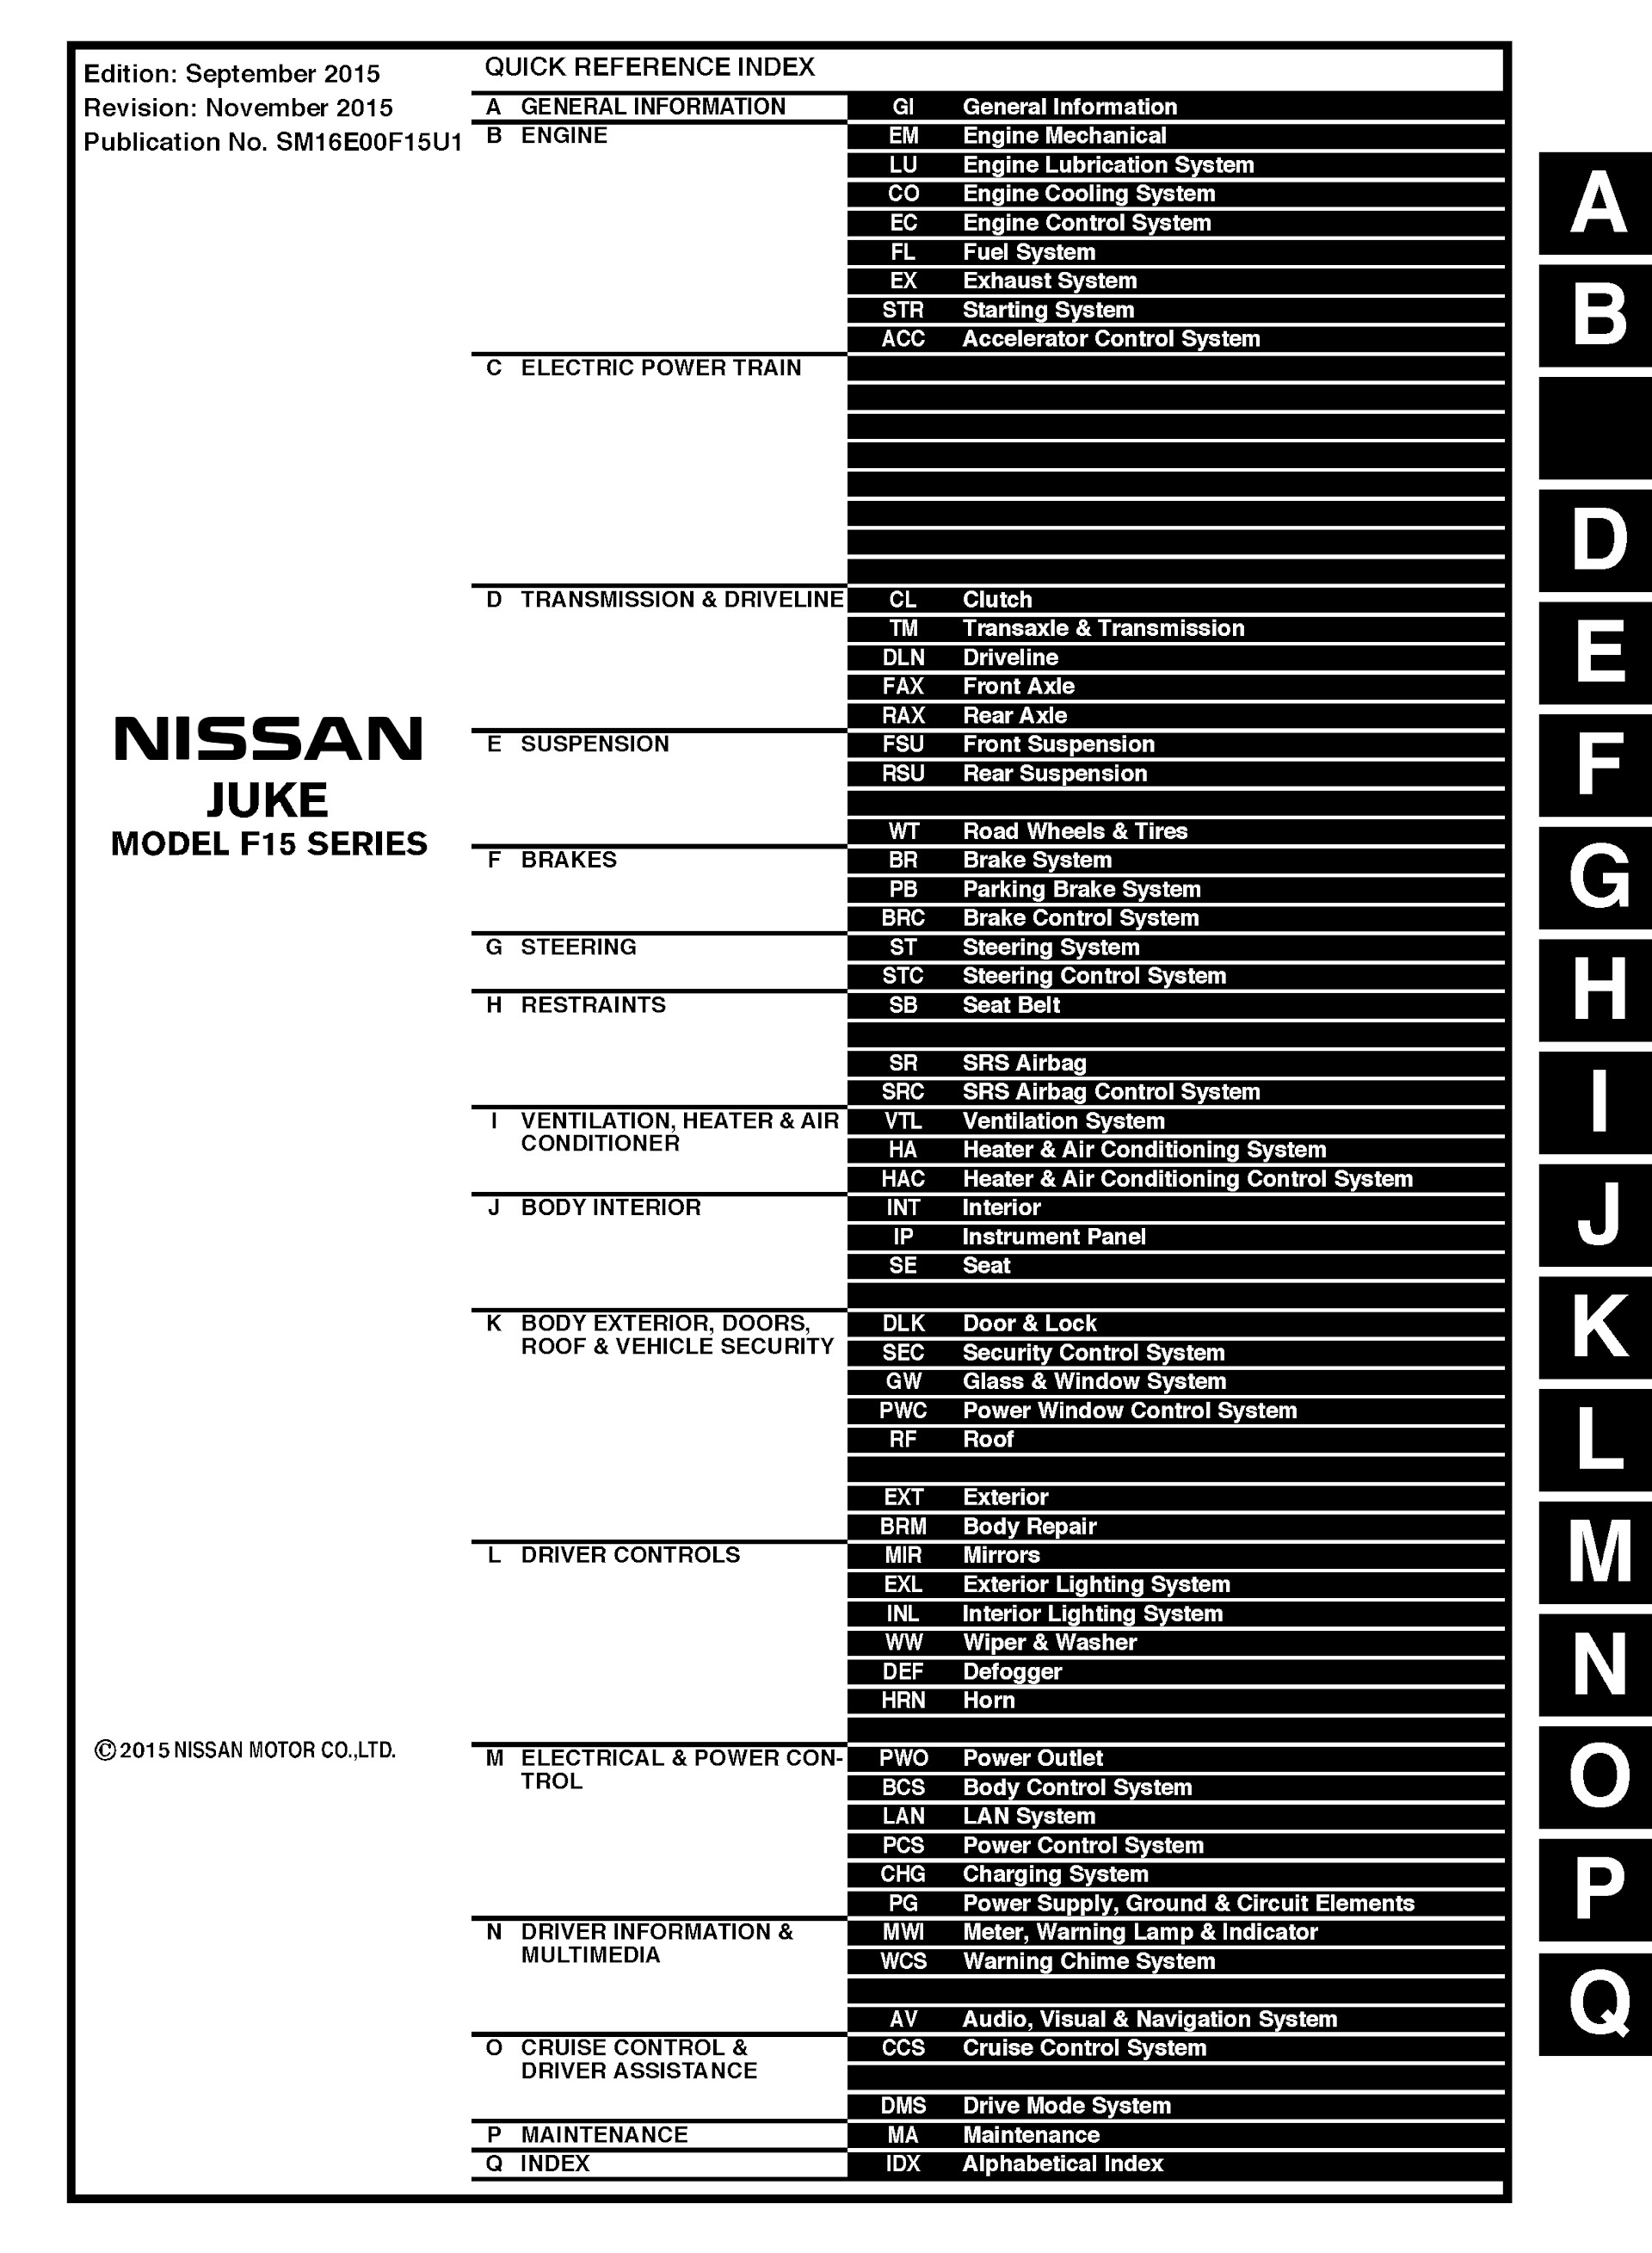 CONTENTS: 2015 Nissan Juke Repair Manual